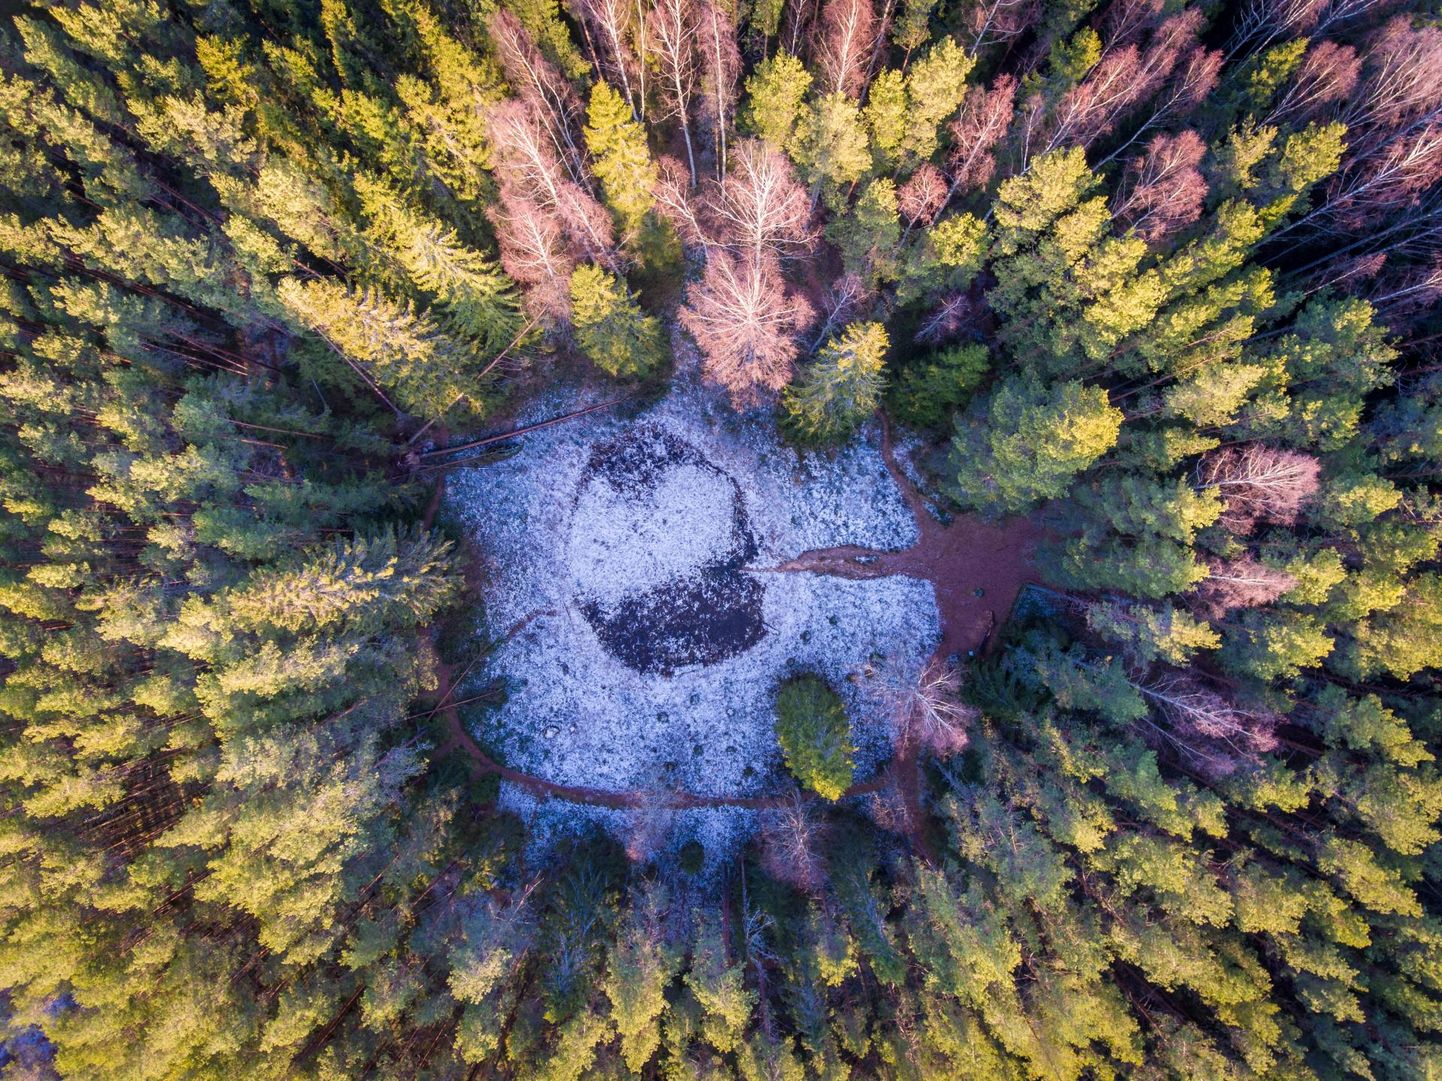 Põlvamaa, Ilumetsa 12.12.2019

Ilumetsa meteoriidikraater Põlvamaal.
Loodus, mets, matkarada, vaatamisväärsus

Põrguhaud, põrguvärav on valli servalt 75-80m läbimõõduga ja sügavus 12,5 m. Vanus 6000 aastat.